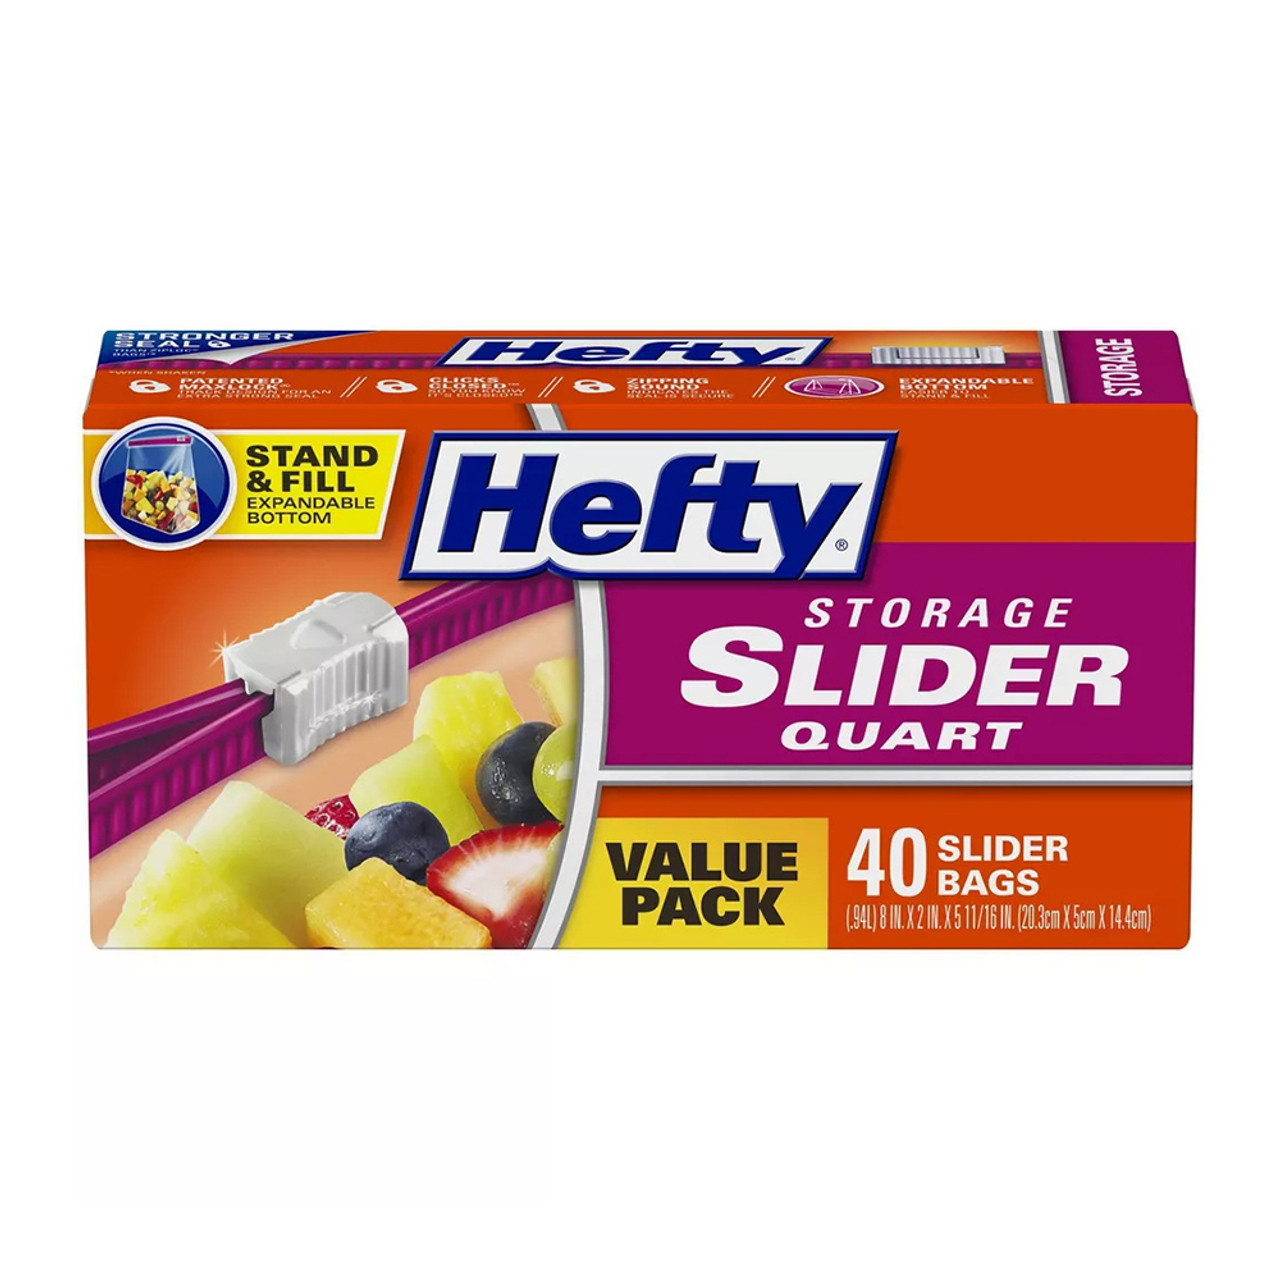 Hefty - Hefty, Slider Bags, Storage, Quart, Value Pack (40 count), Shop